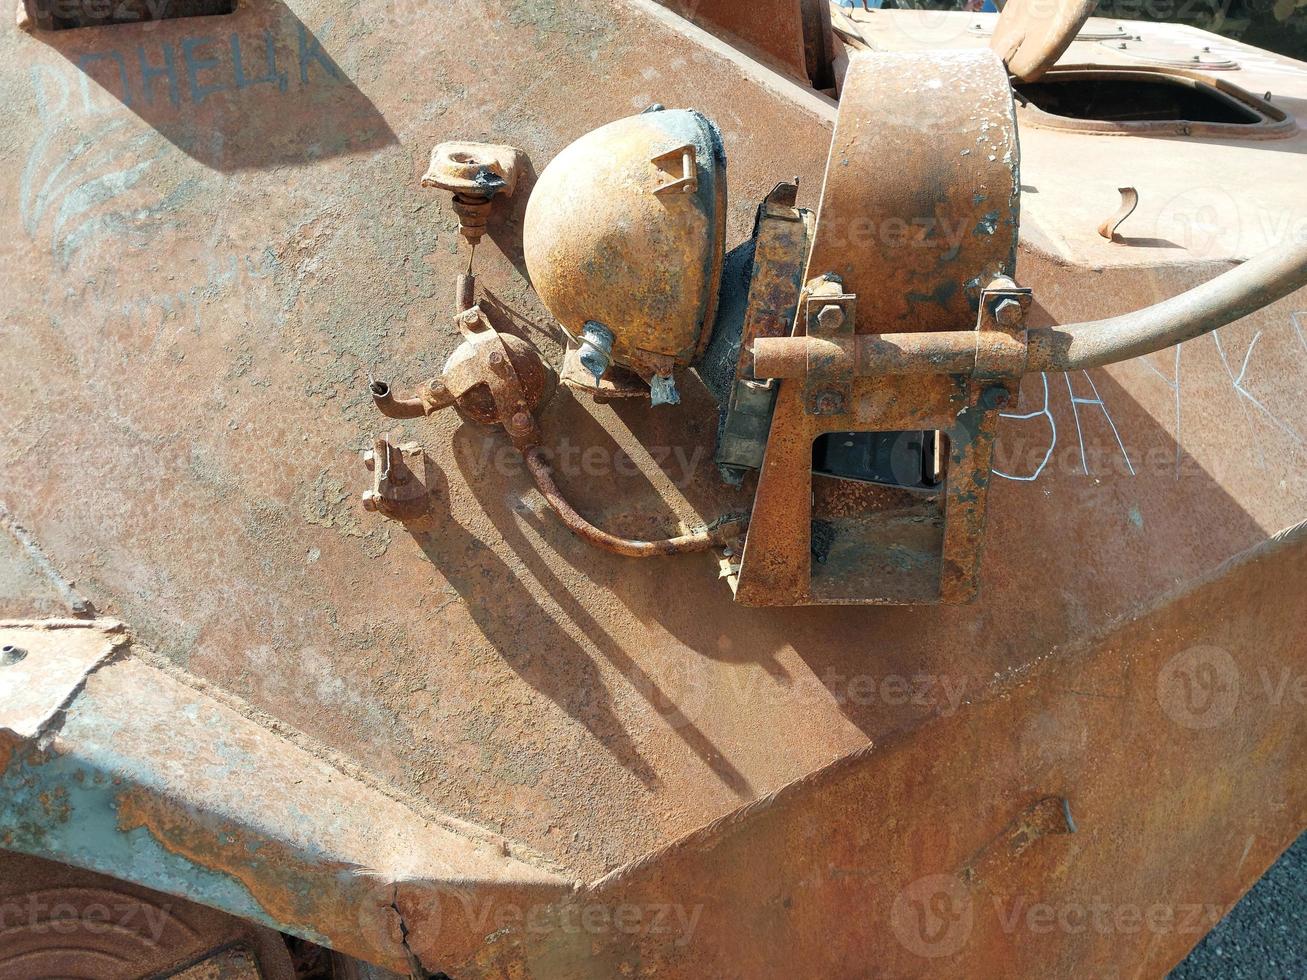 equipamento militar pesado destruído na batalha foto